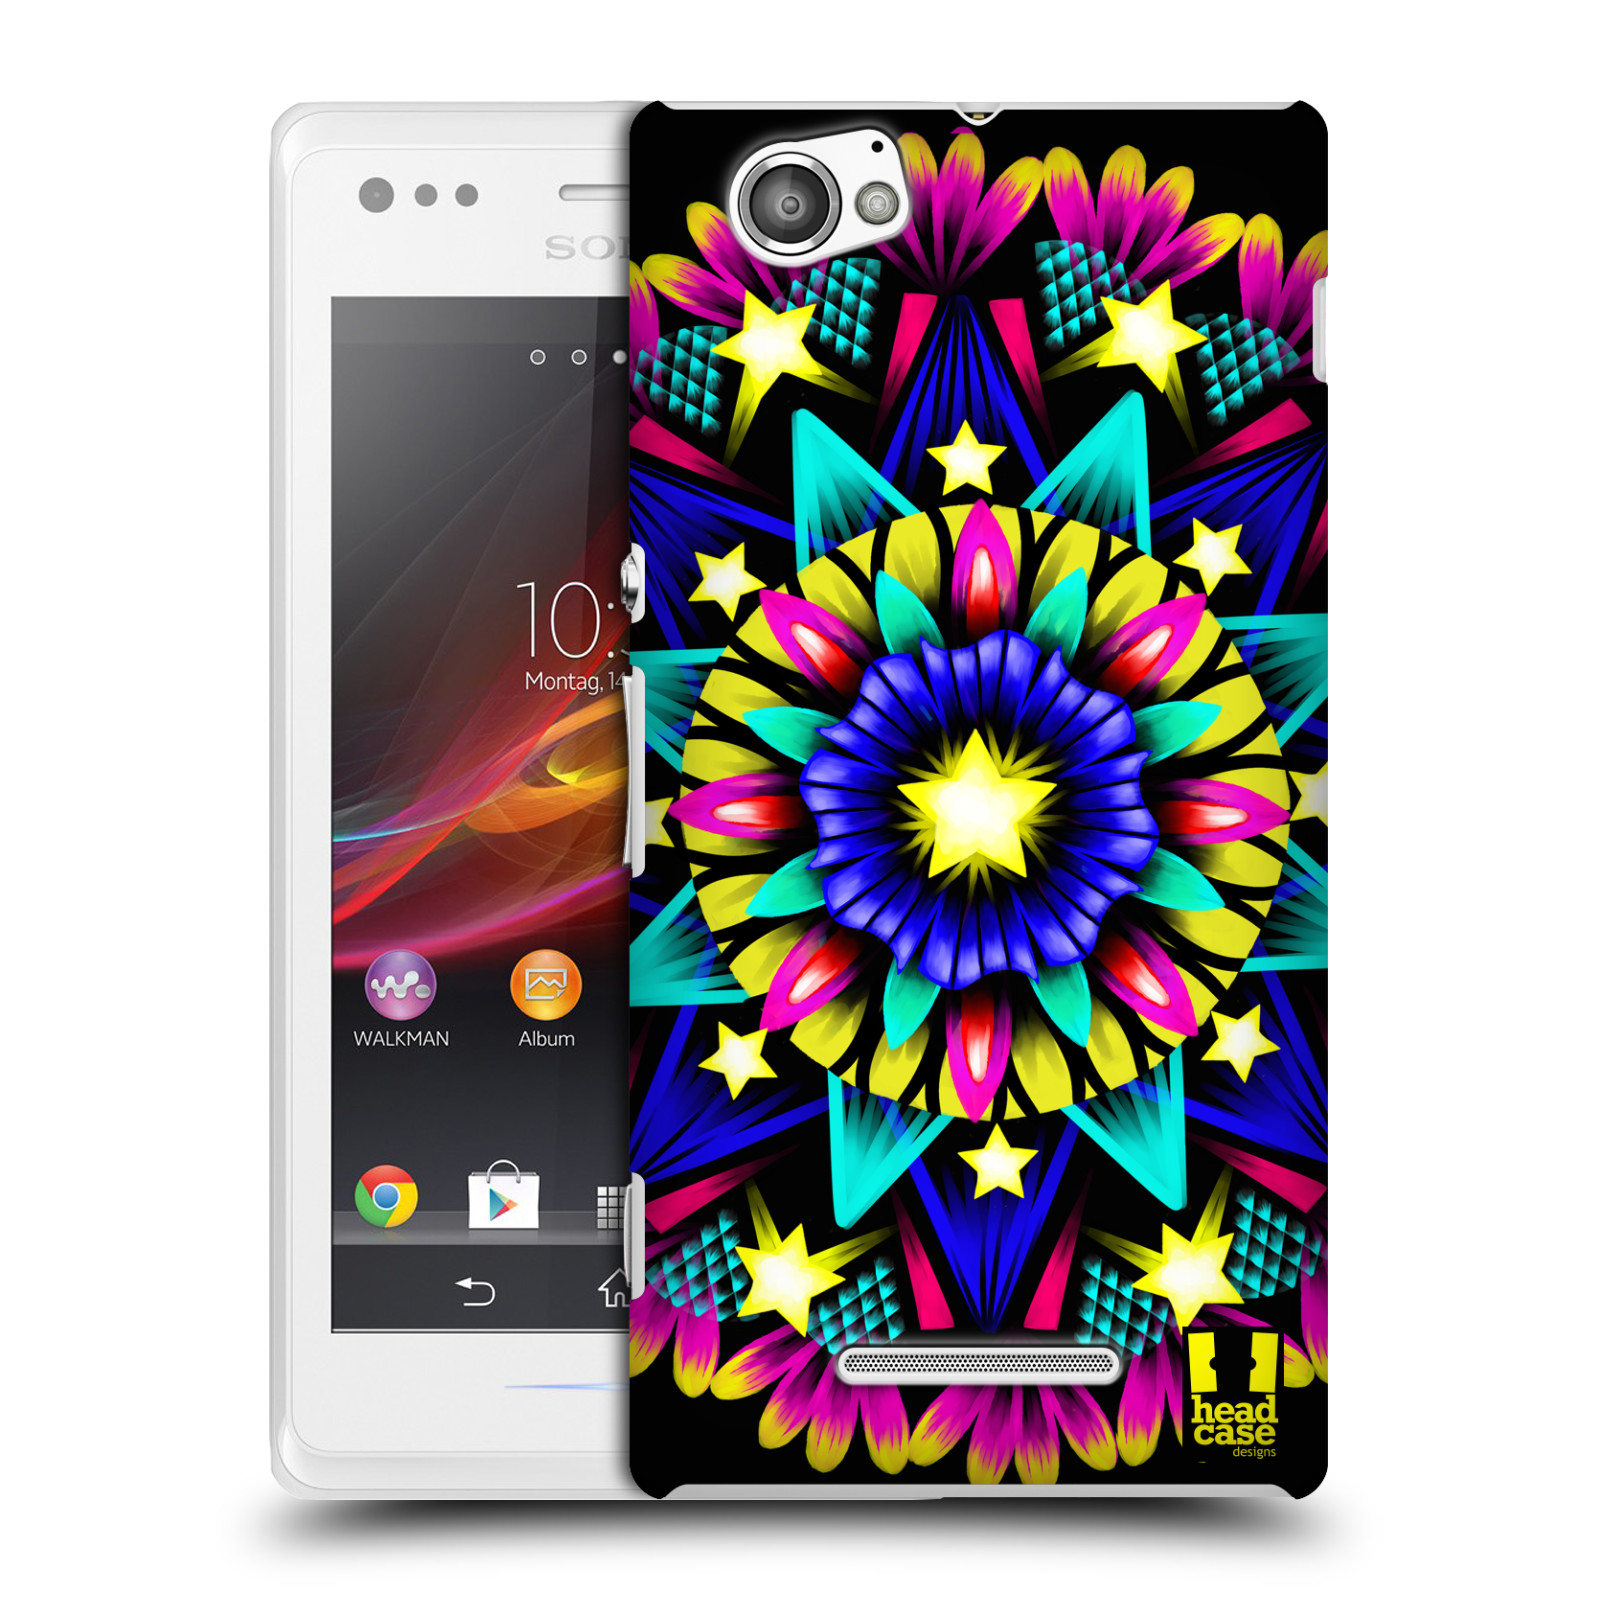 HEAD CASE plastový obal na mobil Sony Xperia M vzor Indie Mandala kaleidoskop barevný vzor HVĚZDA